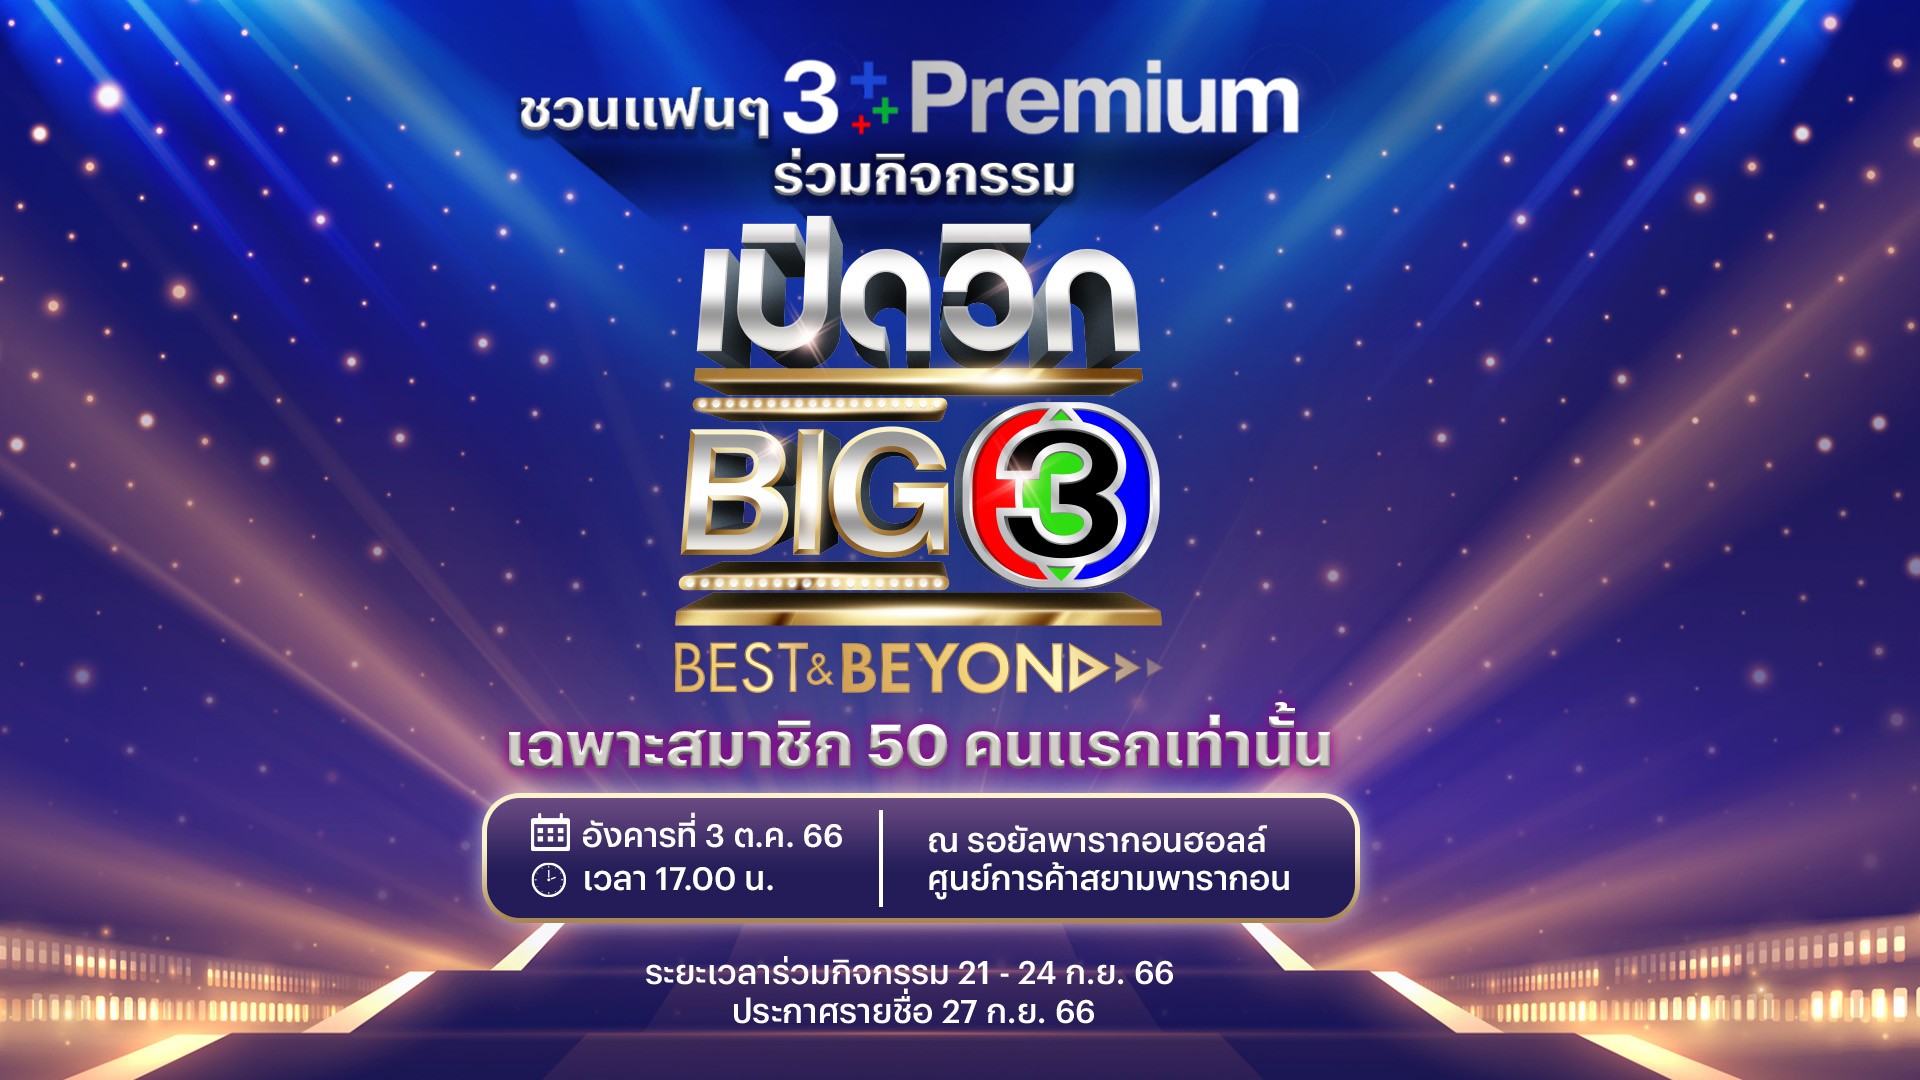 กิจกรรม “เปิดวิก BIG 3 Best & Beyond”